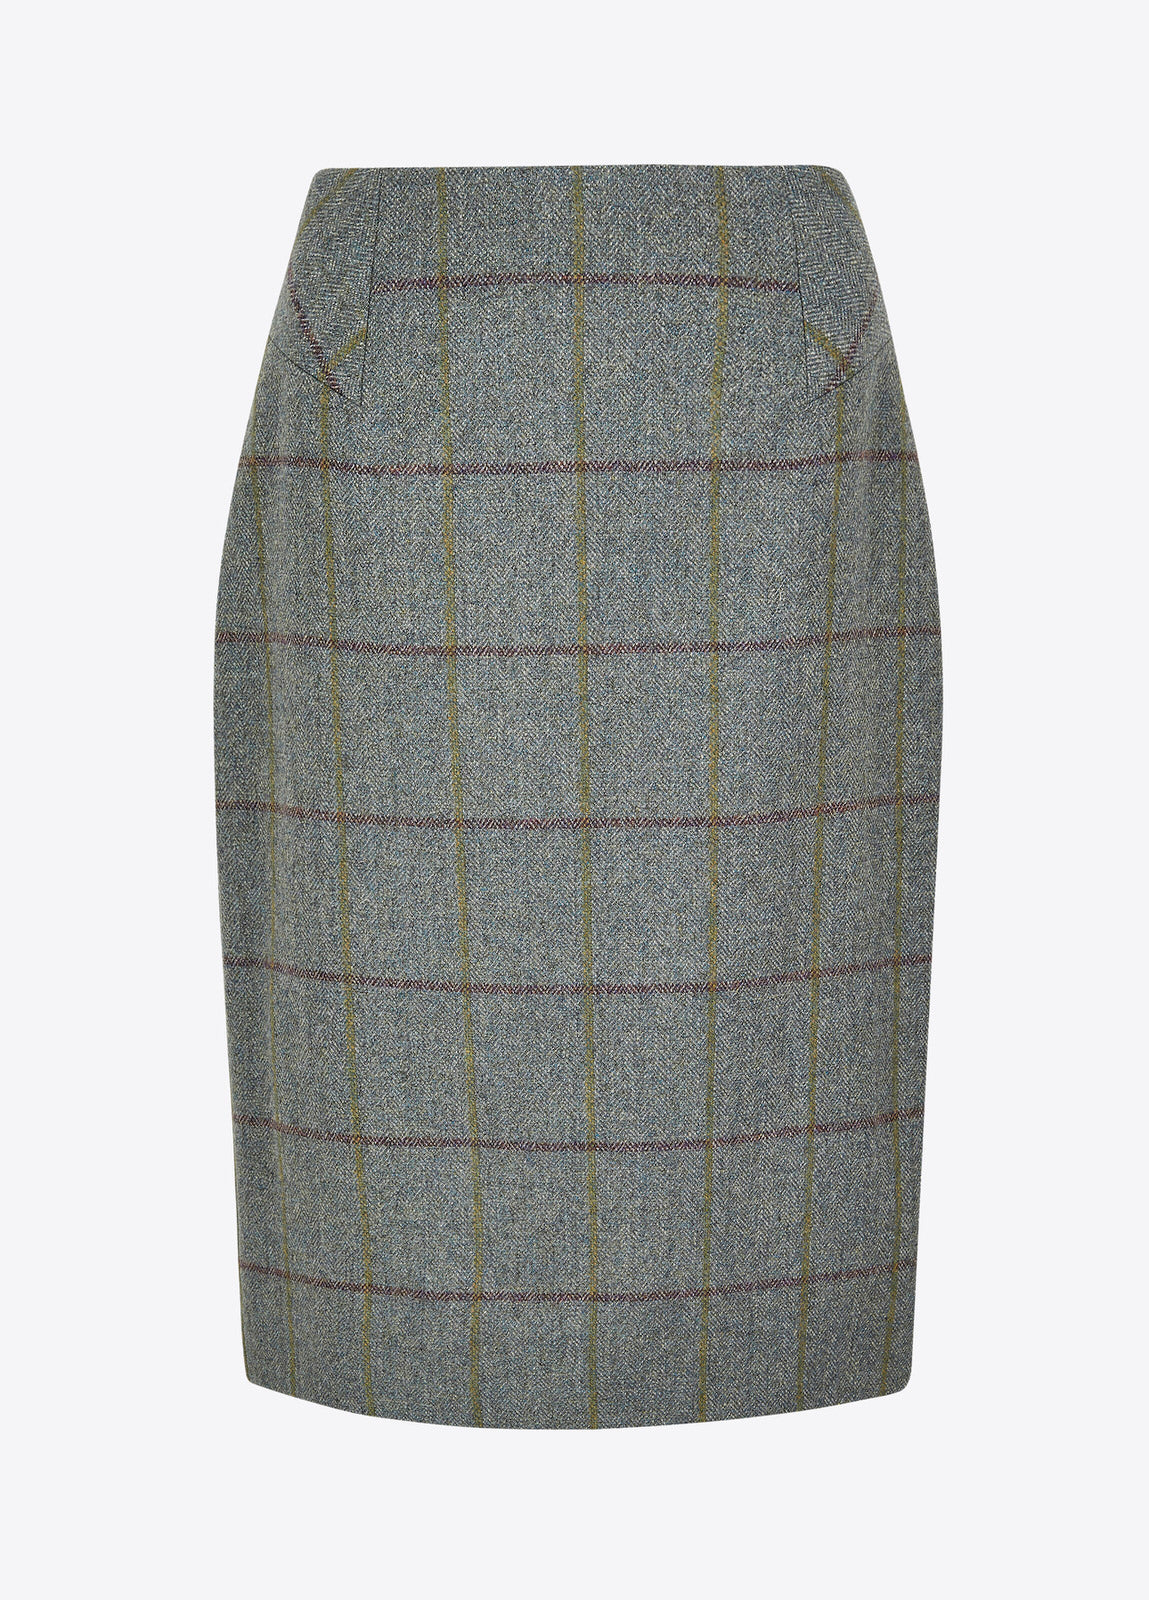 Fern Tweed Skirt - Sorrel